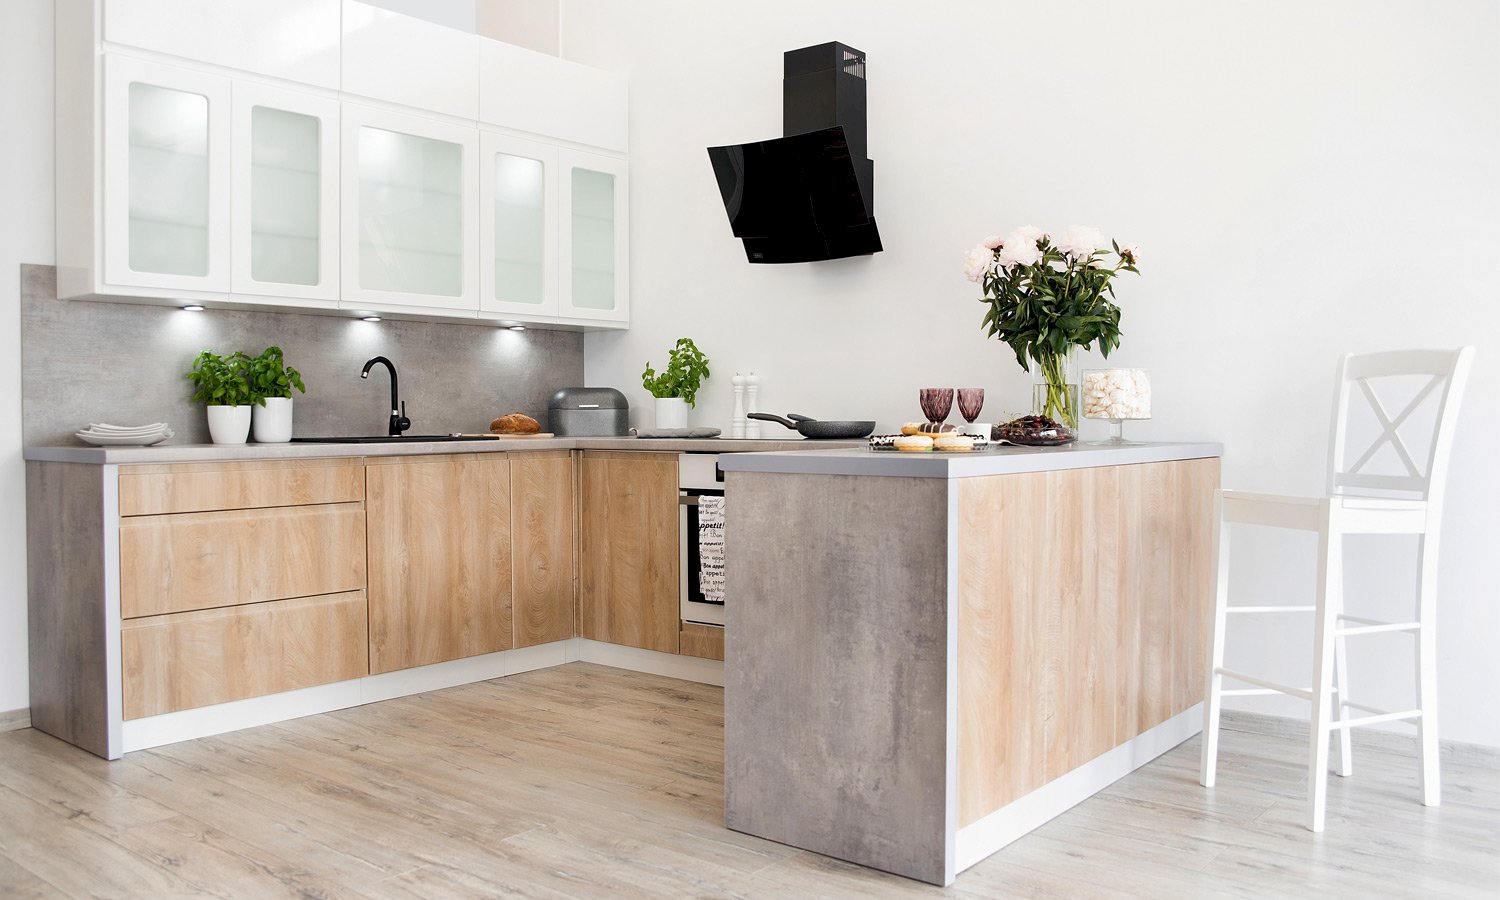 Układ mebli w kuchni – praktyczne rozwiązania do każdego pomieszczenia